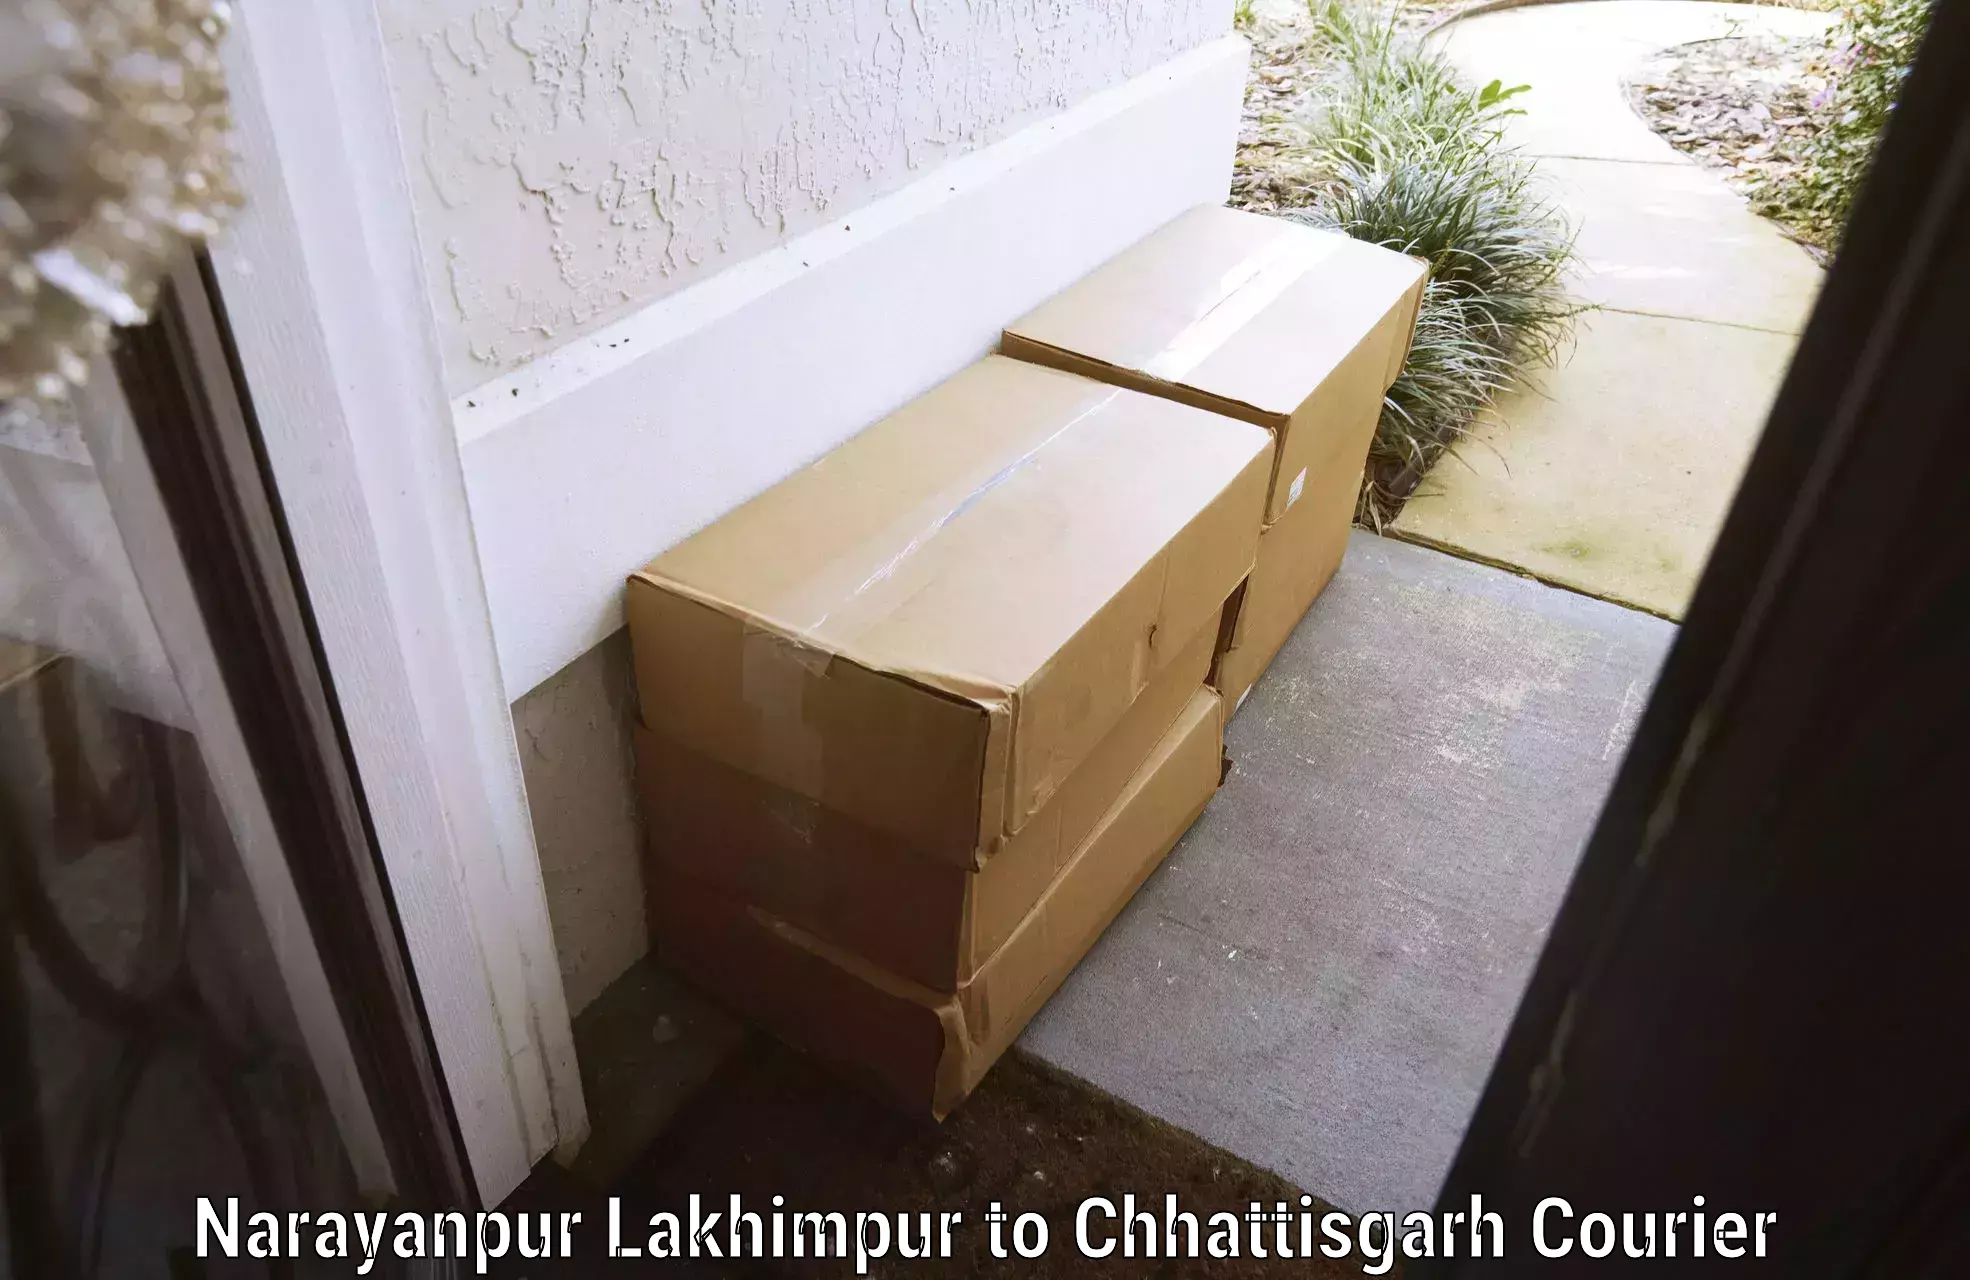 Quick baggage pickup Narayanpur Lakhimpur to Chhattisgarh